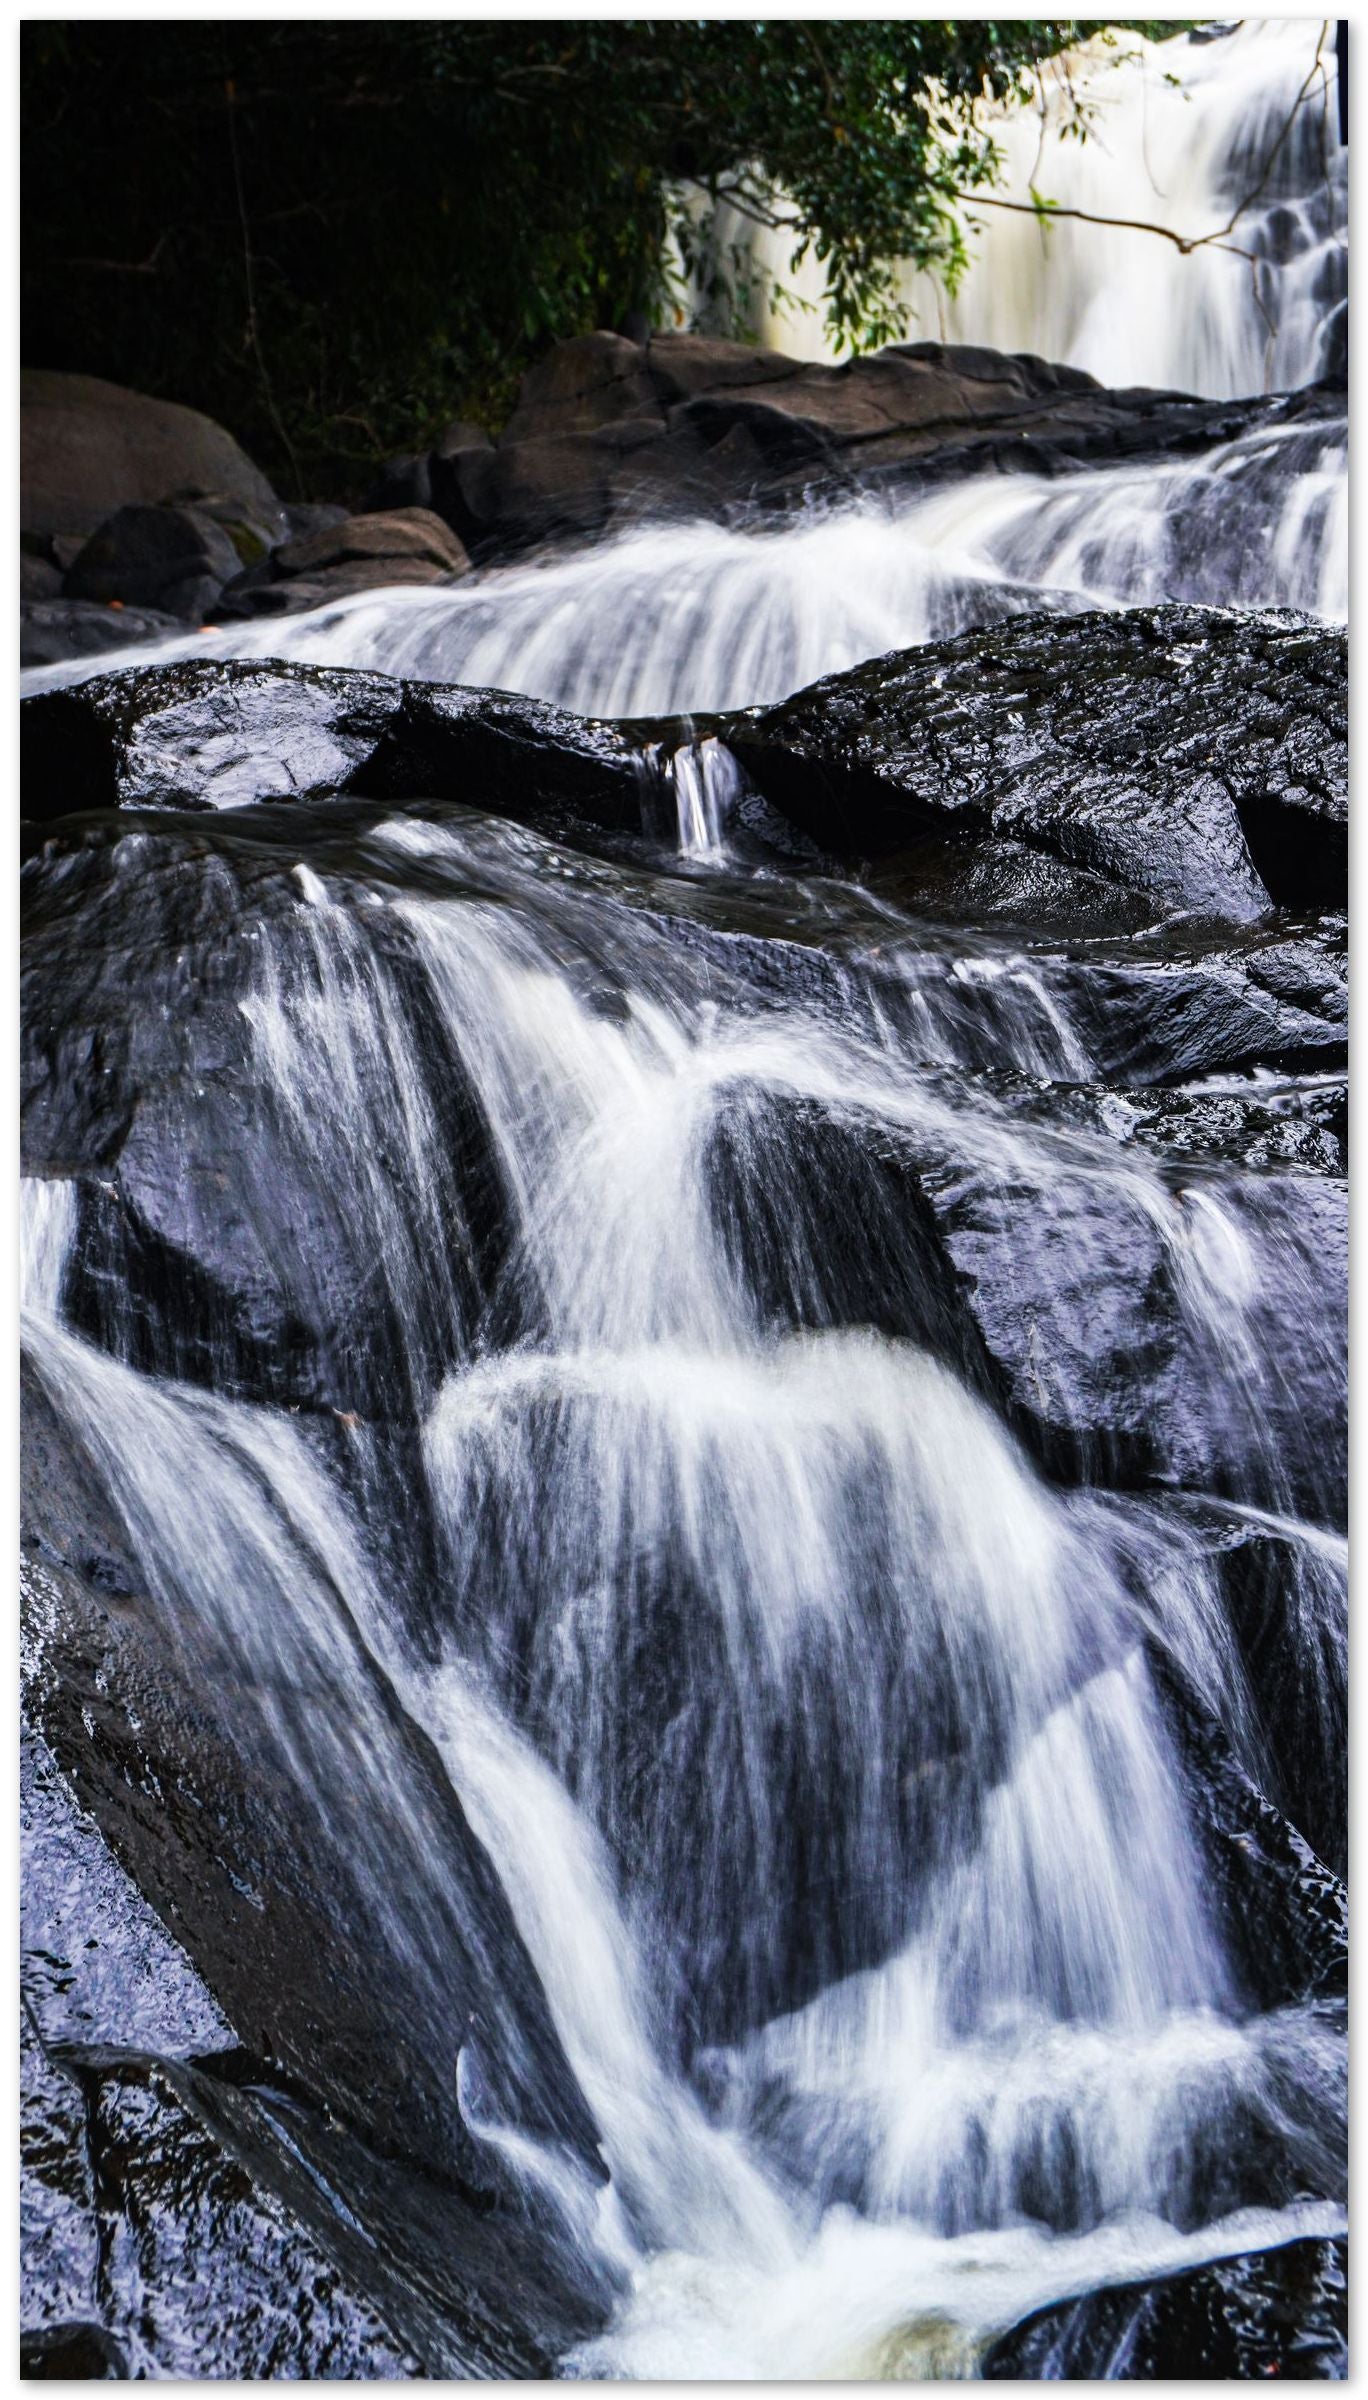 Small River and Stone - @ColorizeStudio